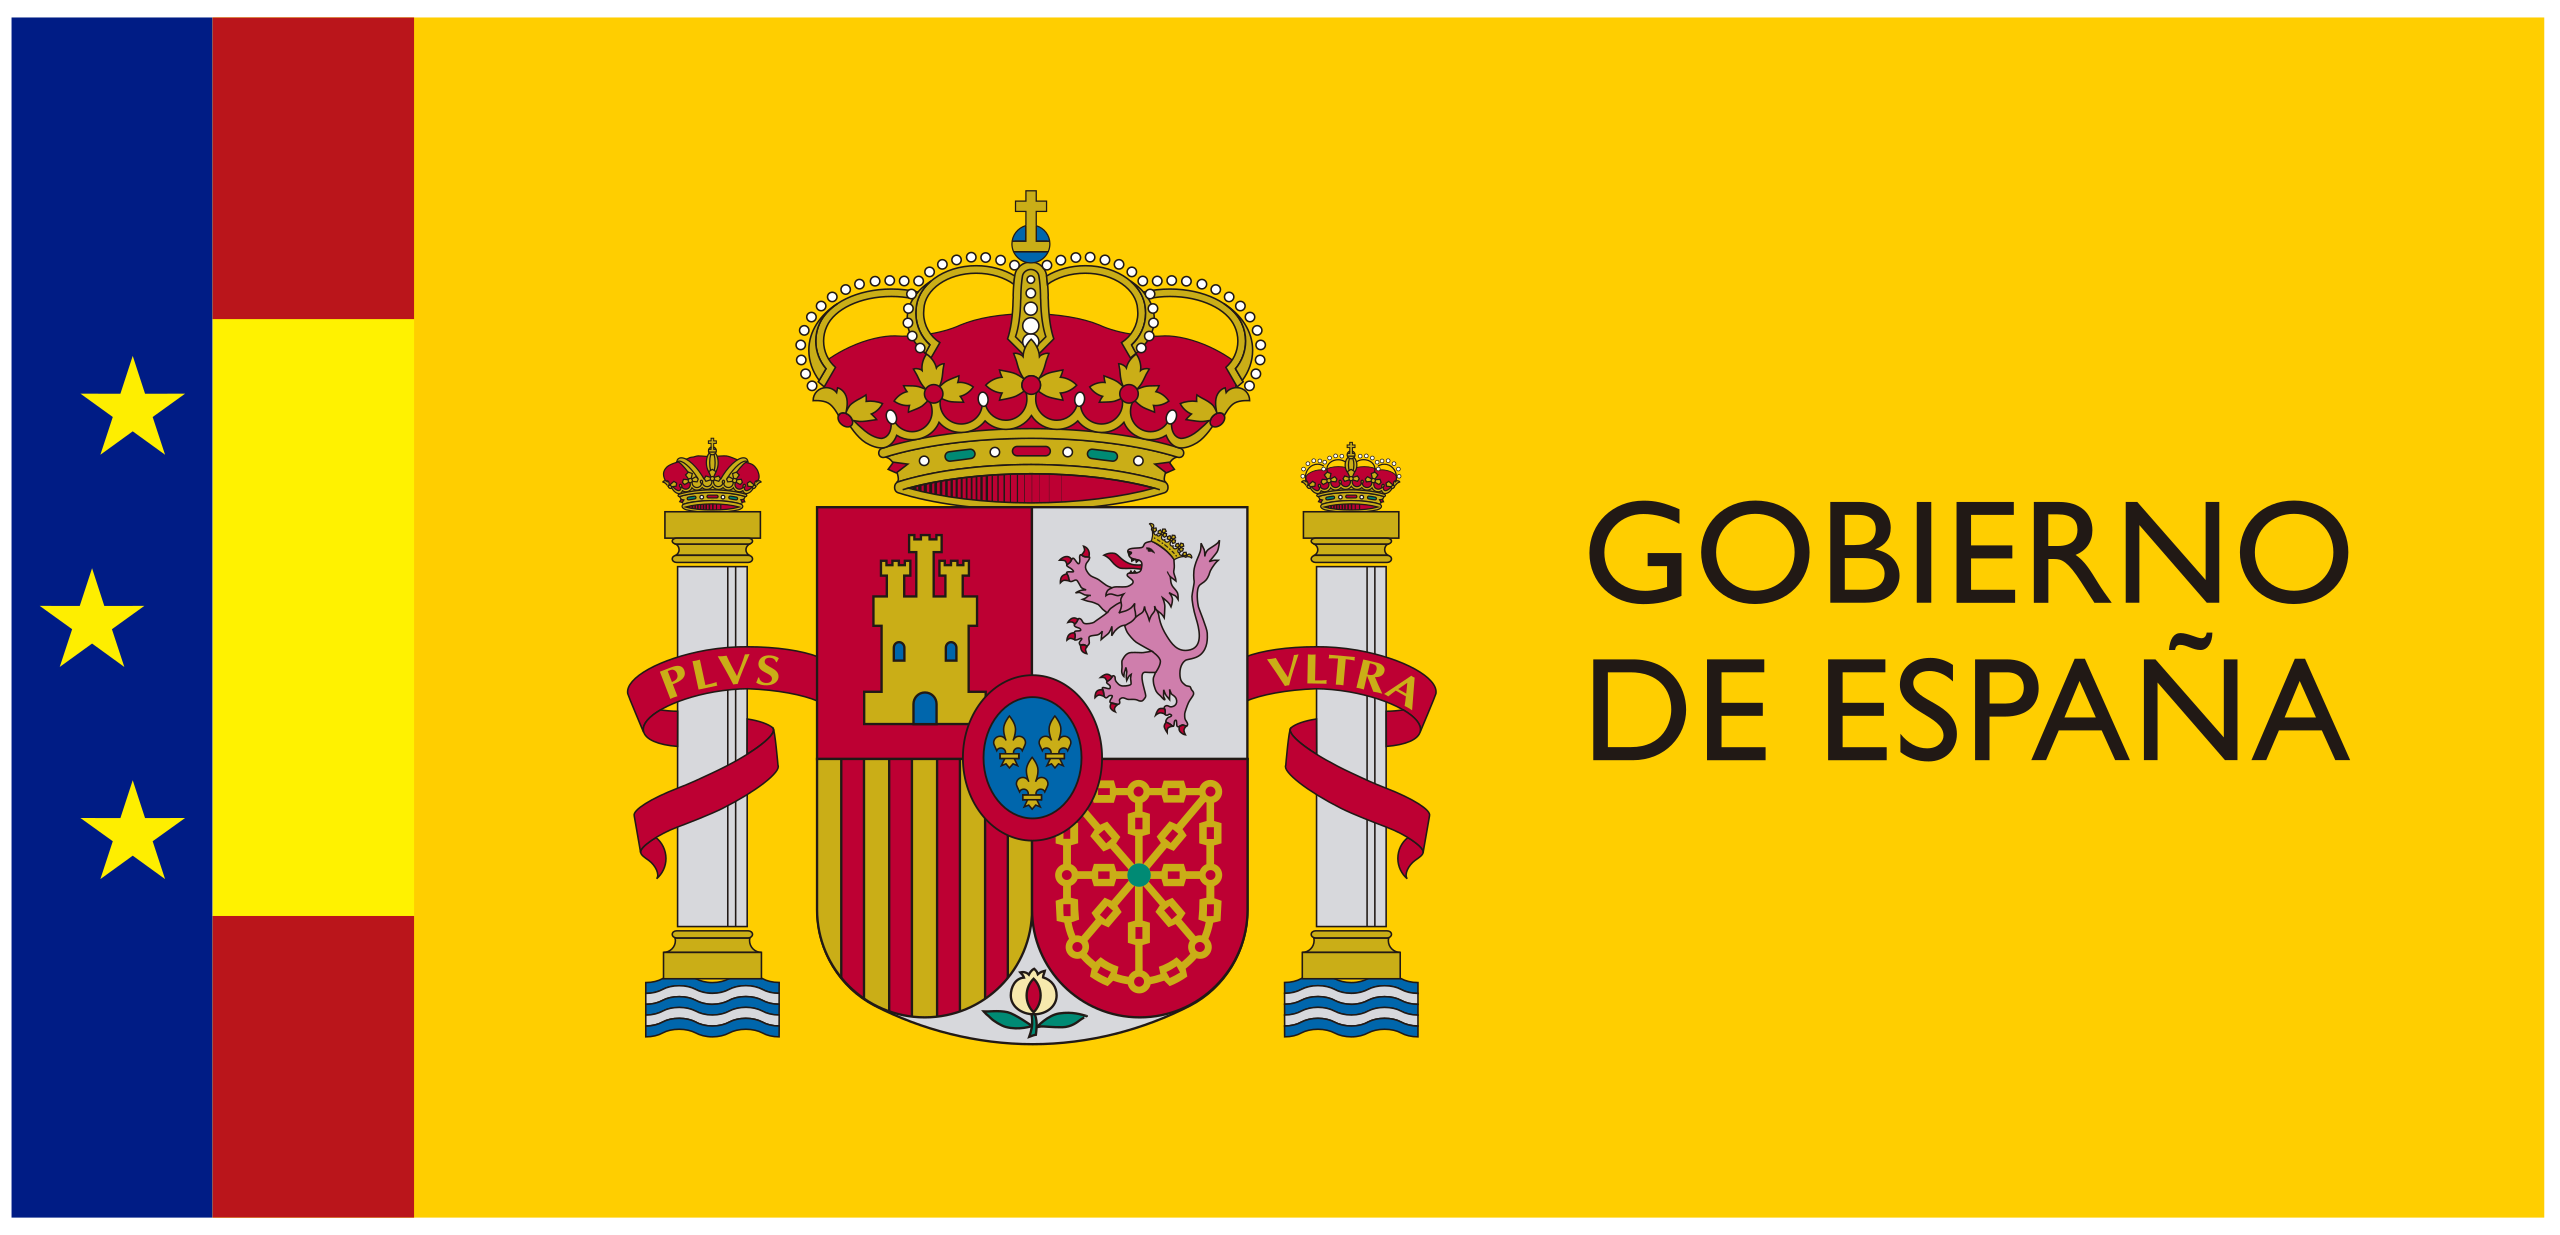 Logotipo del Gobierno de Espana.svg